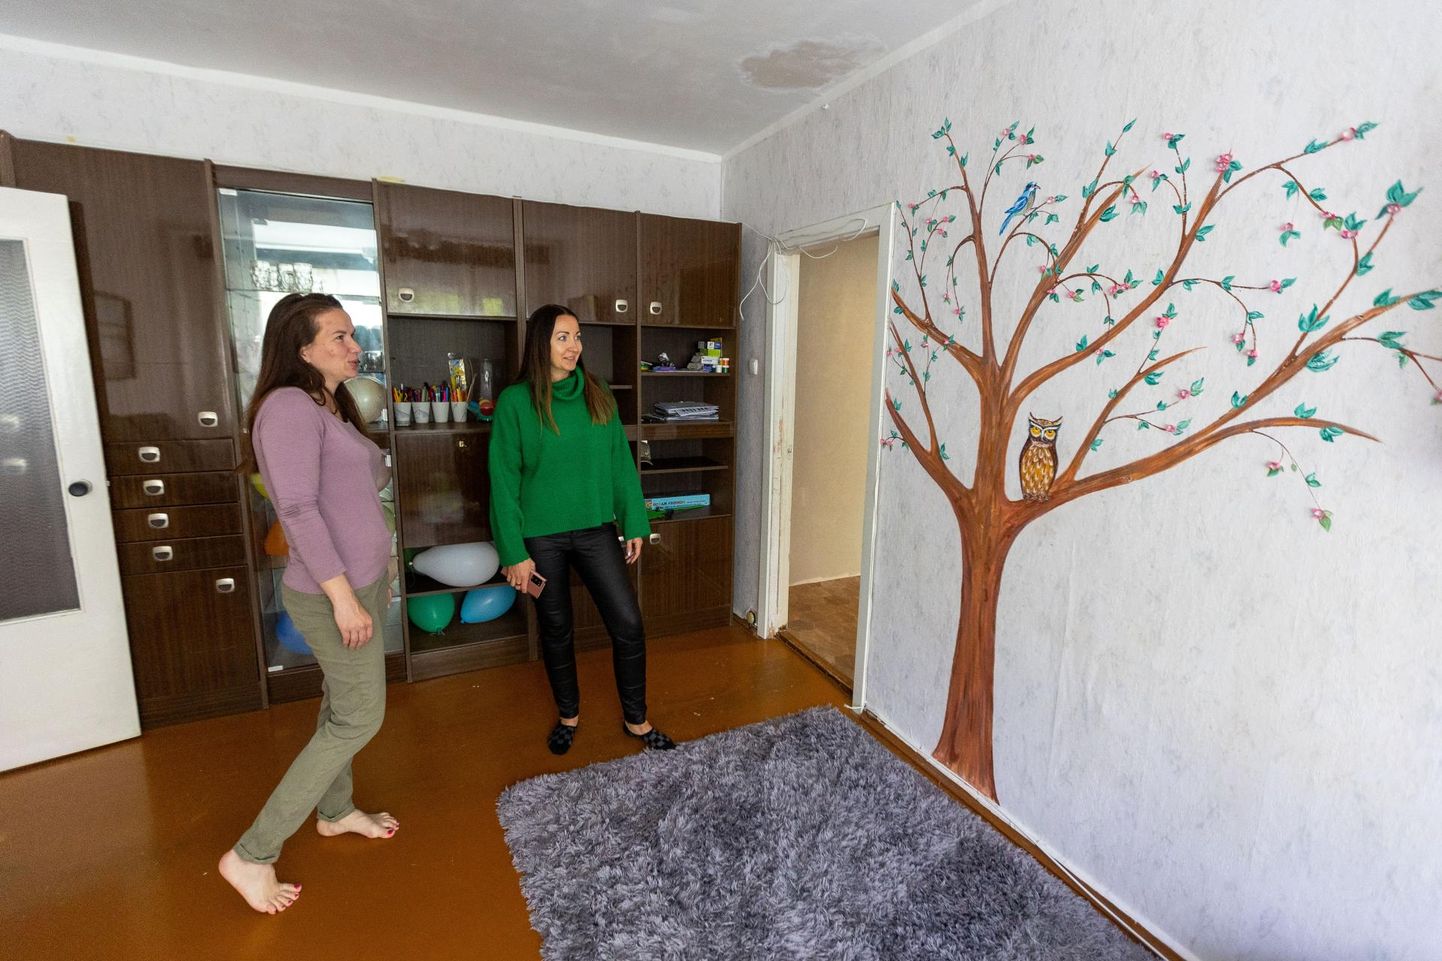 Ukrainlanna Ira Borisenko-Krohmalyuk (vasakul) maalis Türil üüritud korterisse laste rõõmuks seinale puu. Kinnisvaramaakler Kairi Gansen (paremal) andis selleks lahkelt loa, sest korteris elab kaks ema oma lastega ning oma päris kodust kaugel olles kulub midagi ilusat hingele marjaks ära.